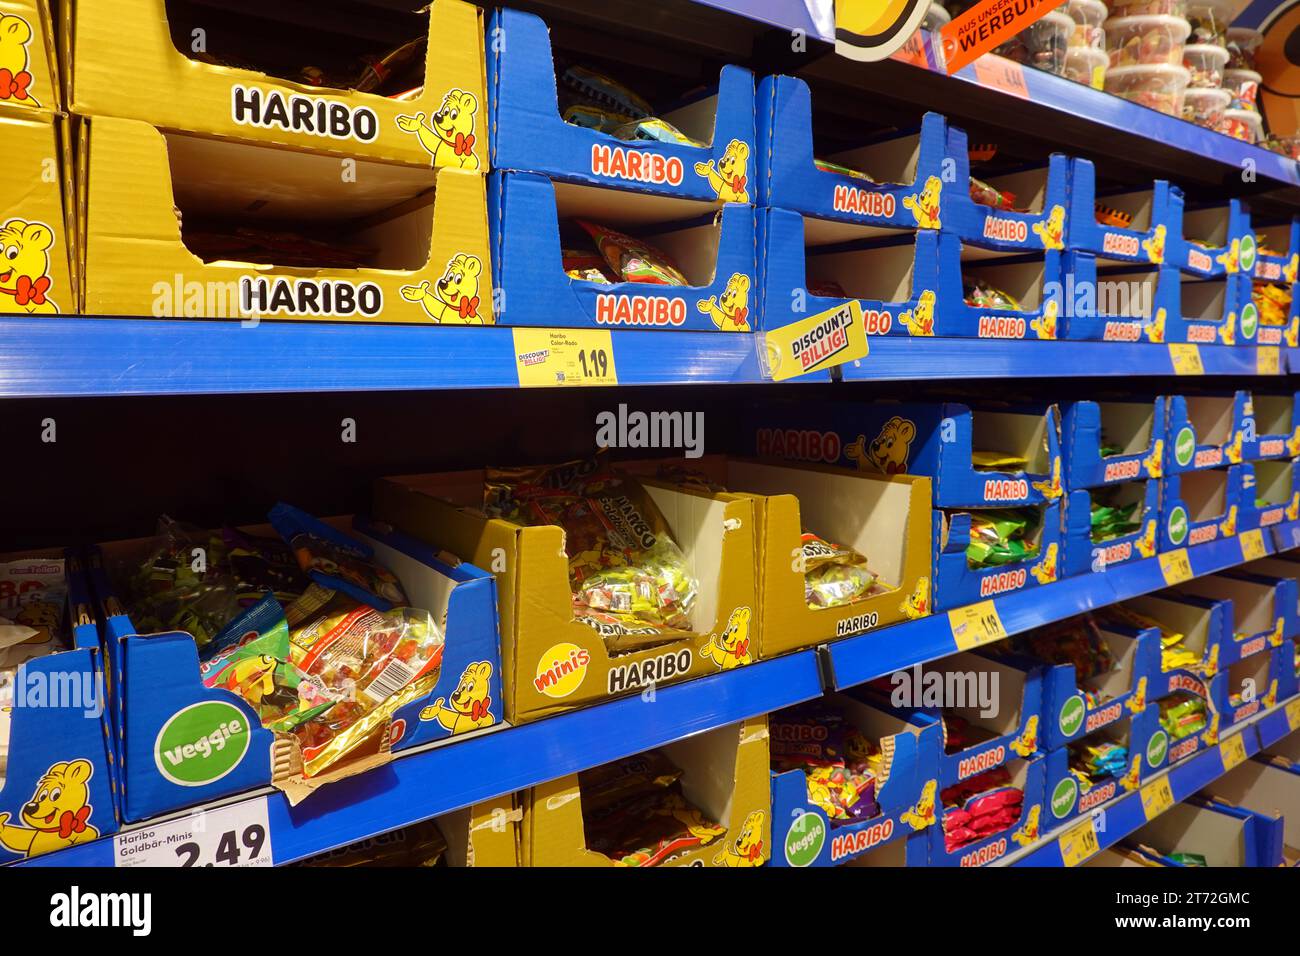 Haribo-Produkte im Regal eines Supermarktes - Symbolbild Stock Photo